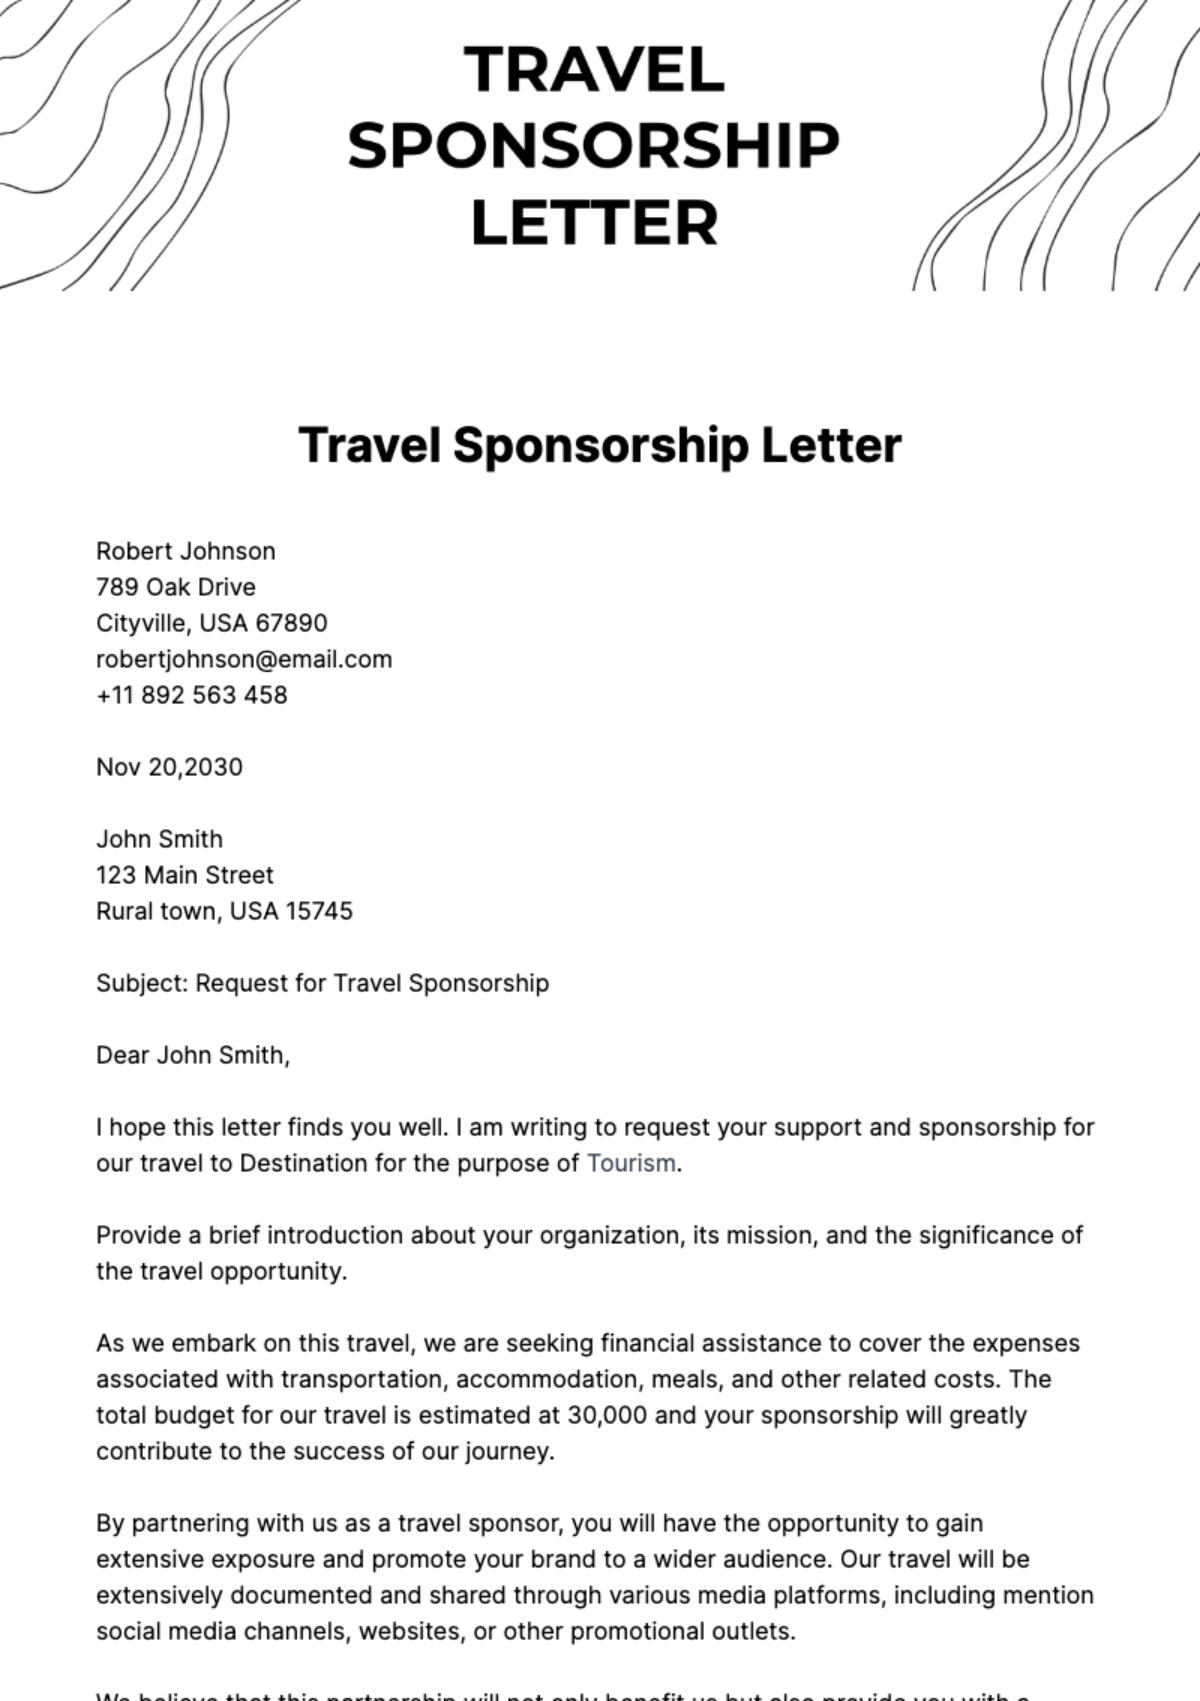 Free Travel Sponsorship Letter Template